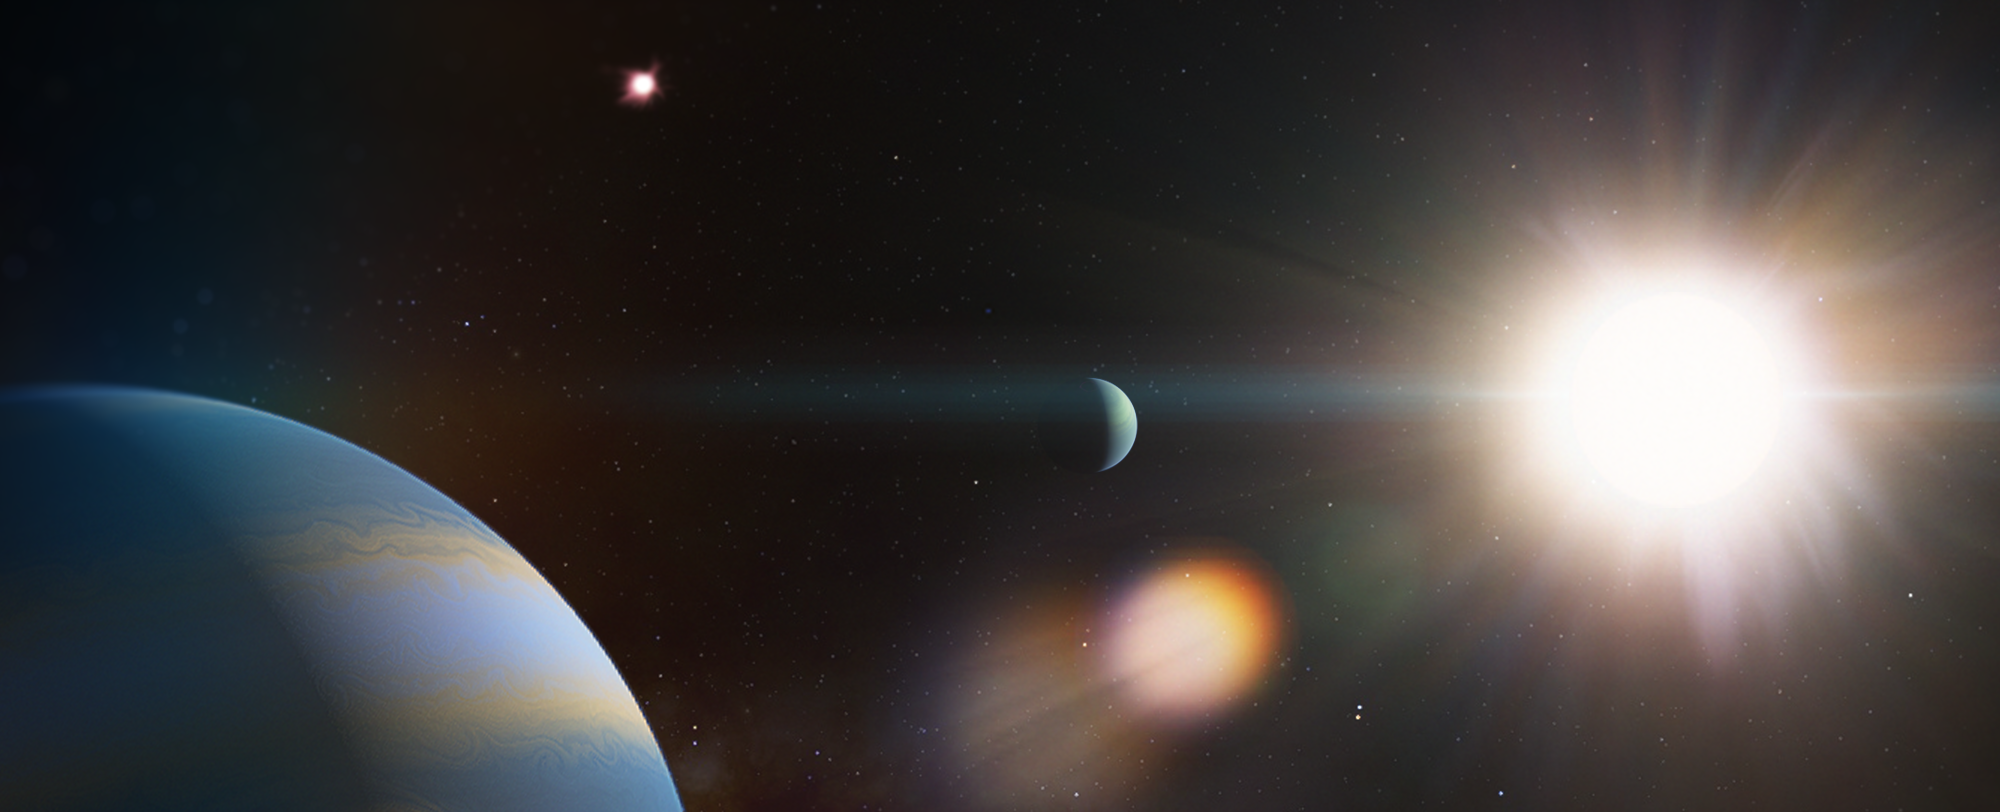 Descoberta de dois sistemas planetários em estrelas parecidas com o Sol